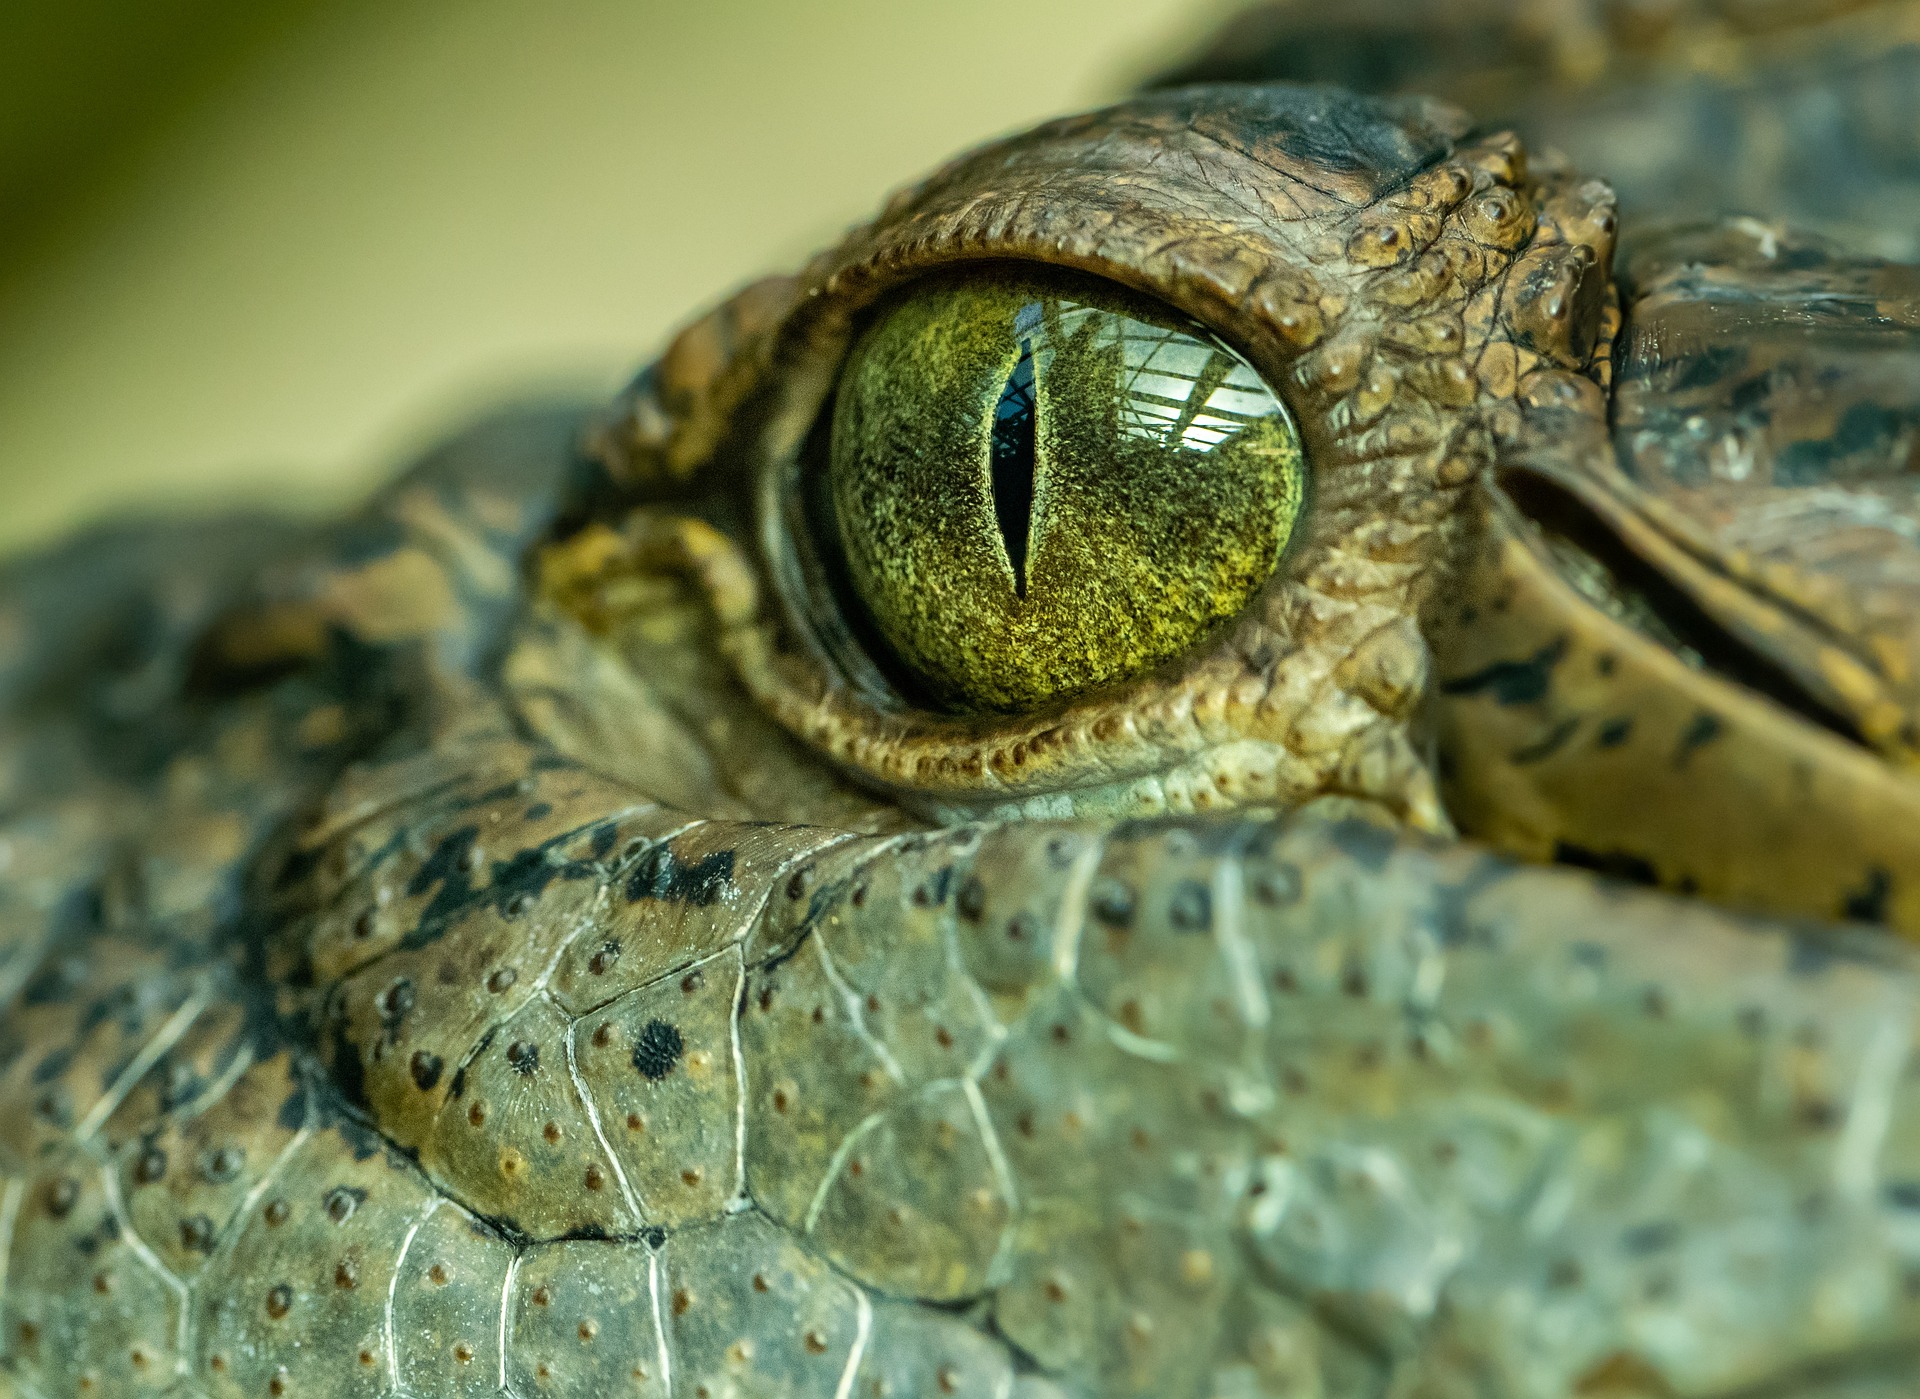 Closeup of a crocodile face and skin.